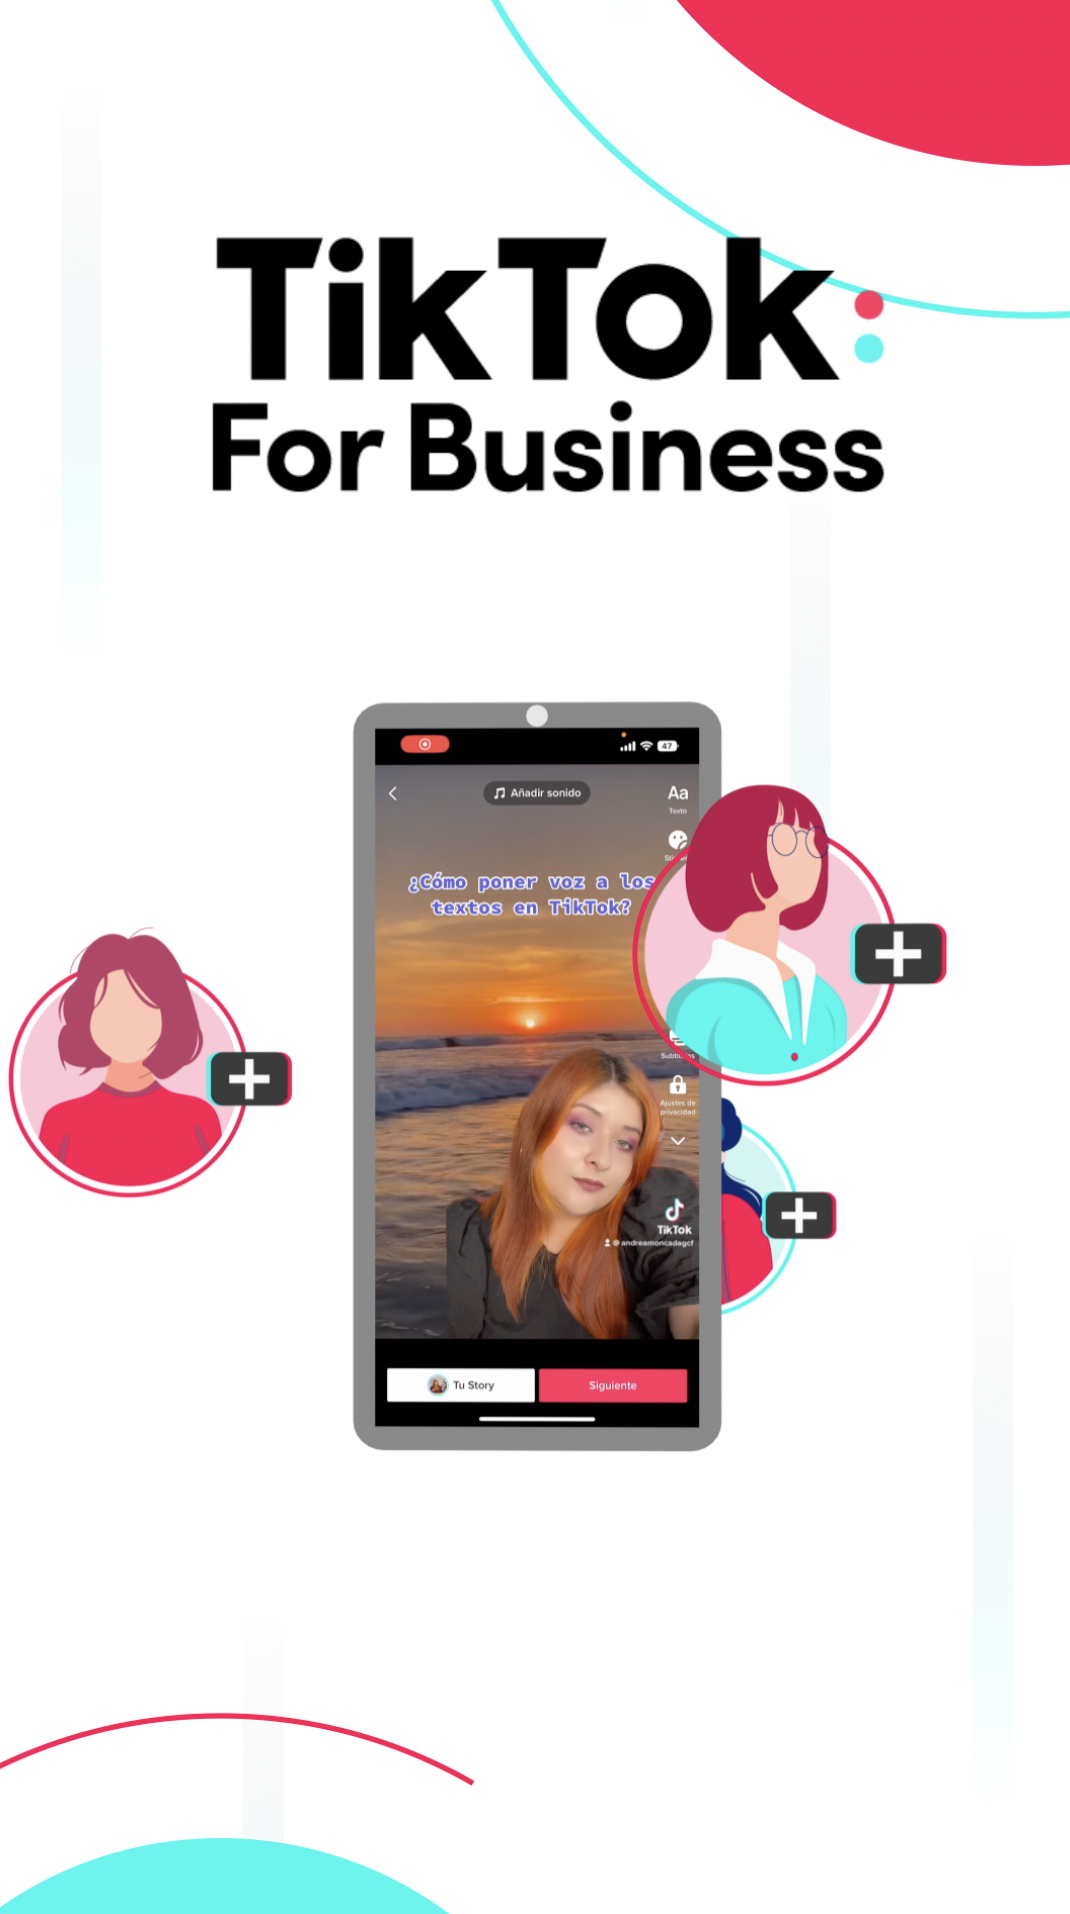 Debido al éxito masivo de esta red social en todo el mundo, las empresas ahora tienen la oportunidad de unirse a TikTok Business, una plataforma diseñada para dar visibilidad a las marcas, aumentar el número de seguidores y conectarse con usuarios globales de la aplicación.